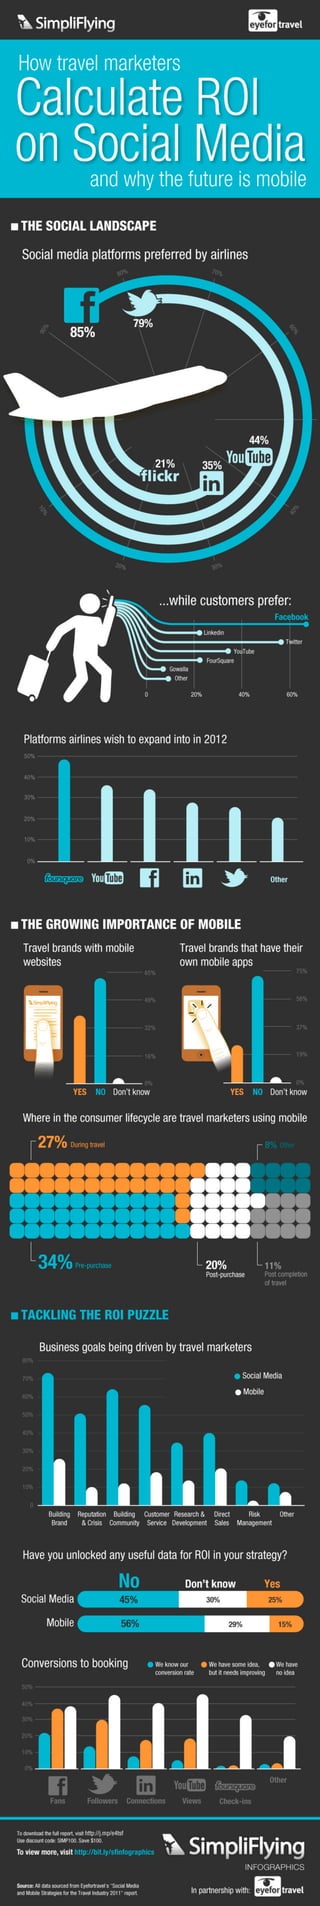 Infographic - Social Media ROI for Travel